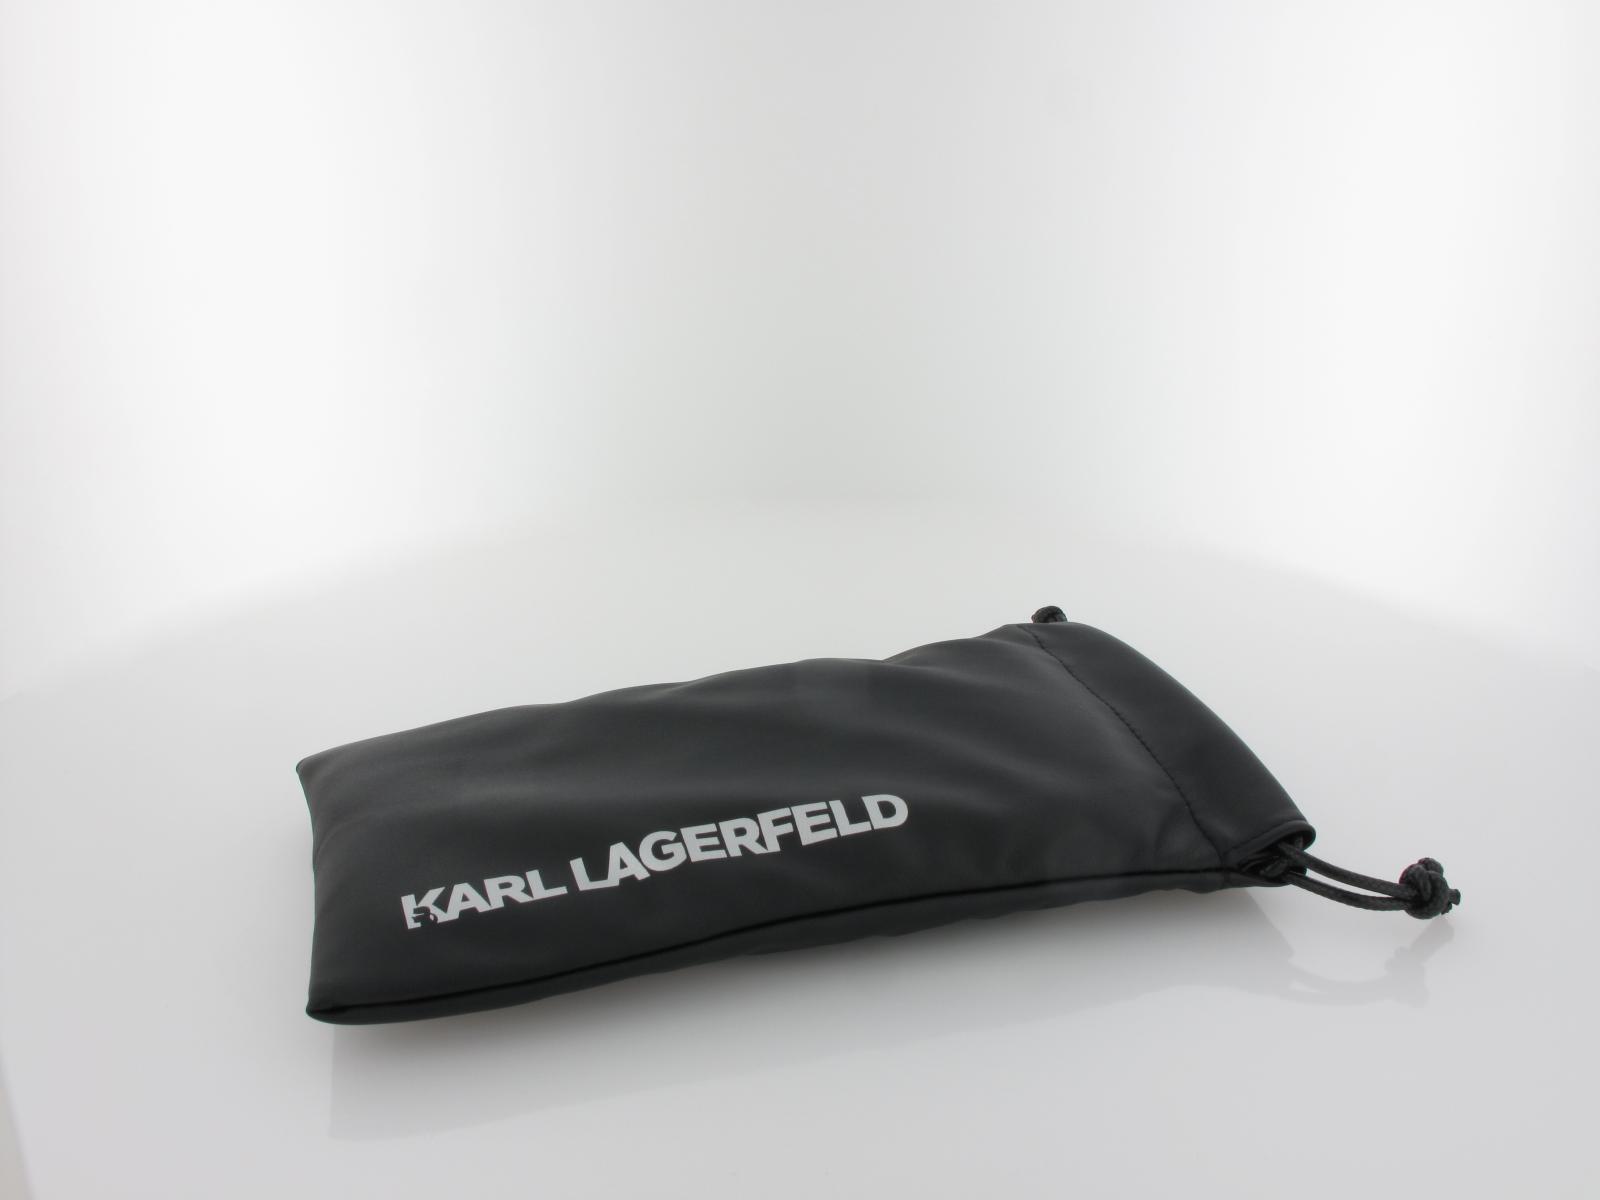 Karl Lagerfeld | KL317 721 56 | rose gold